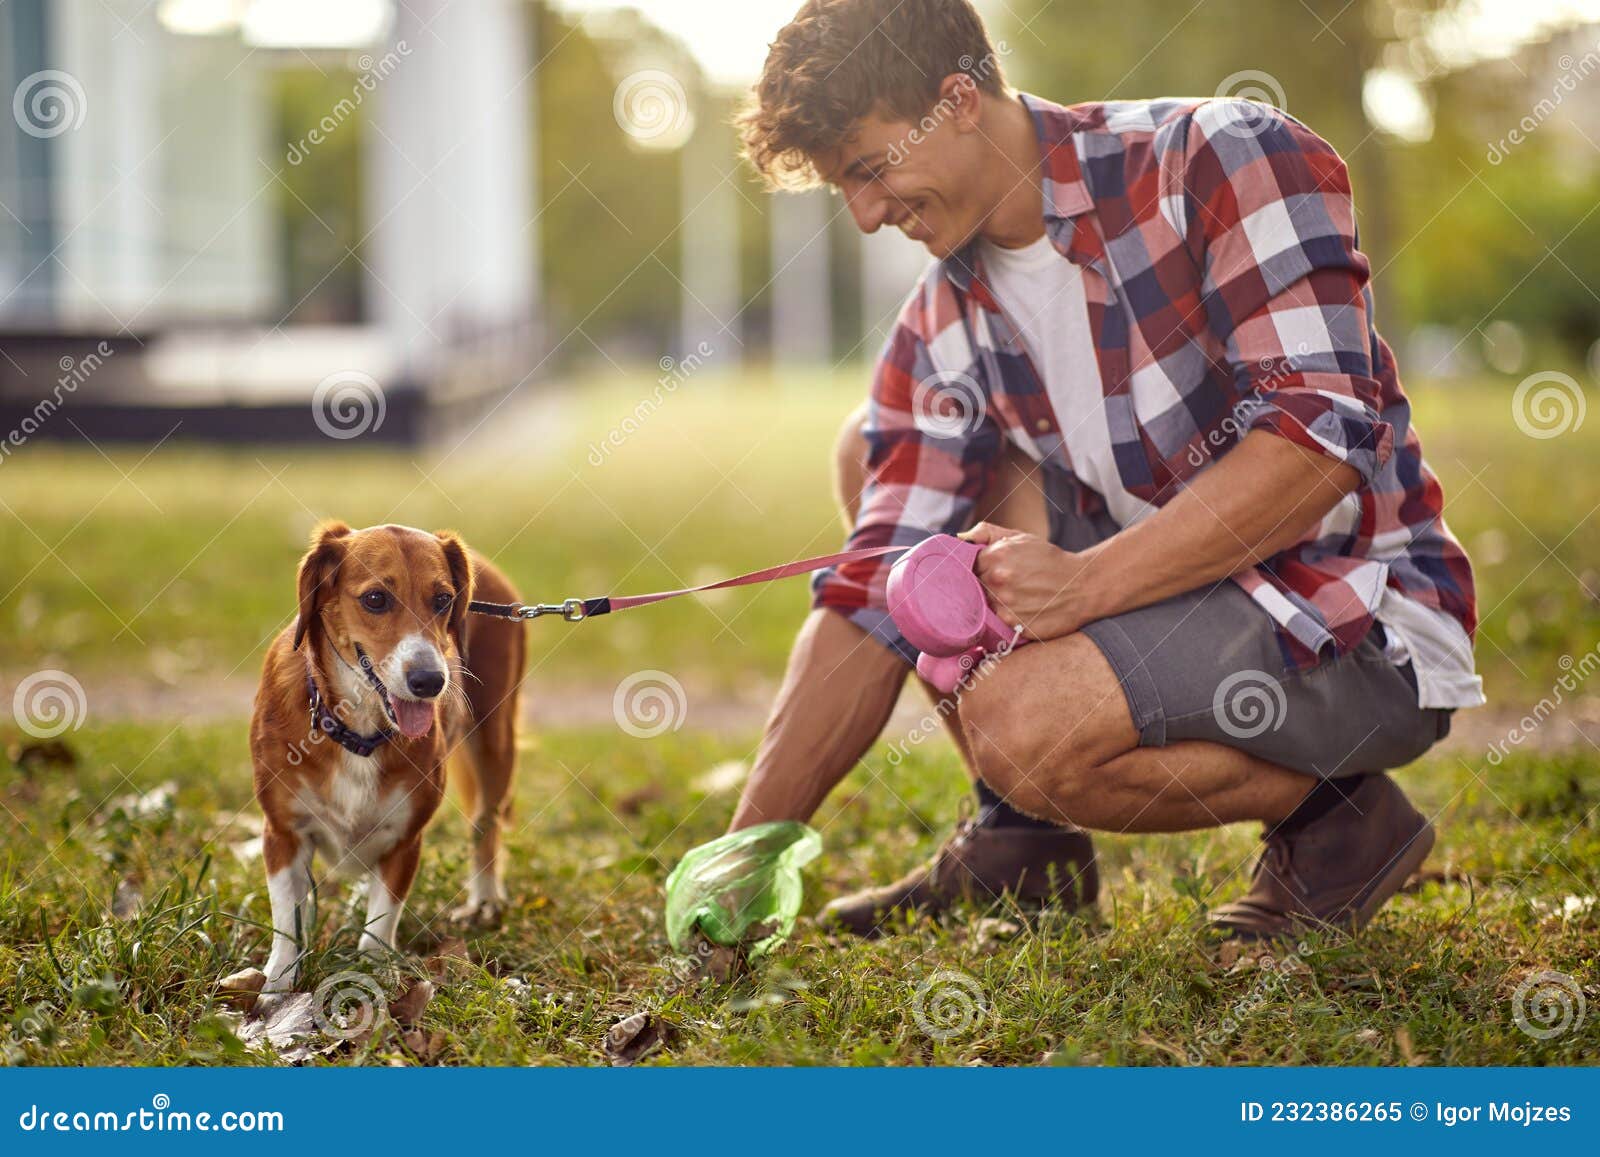 Um Jovem Está De Bom Humor Enquanto Coleciona O Cocô De Seu Cachorro No  Parque. Animais De Estimação Imagem de Stock - Imagem de prazer, feliz:  232386265